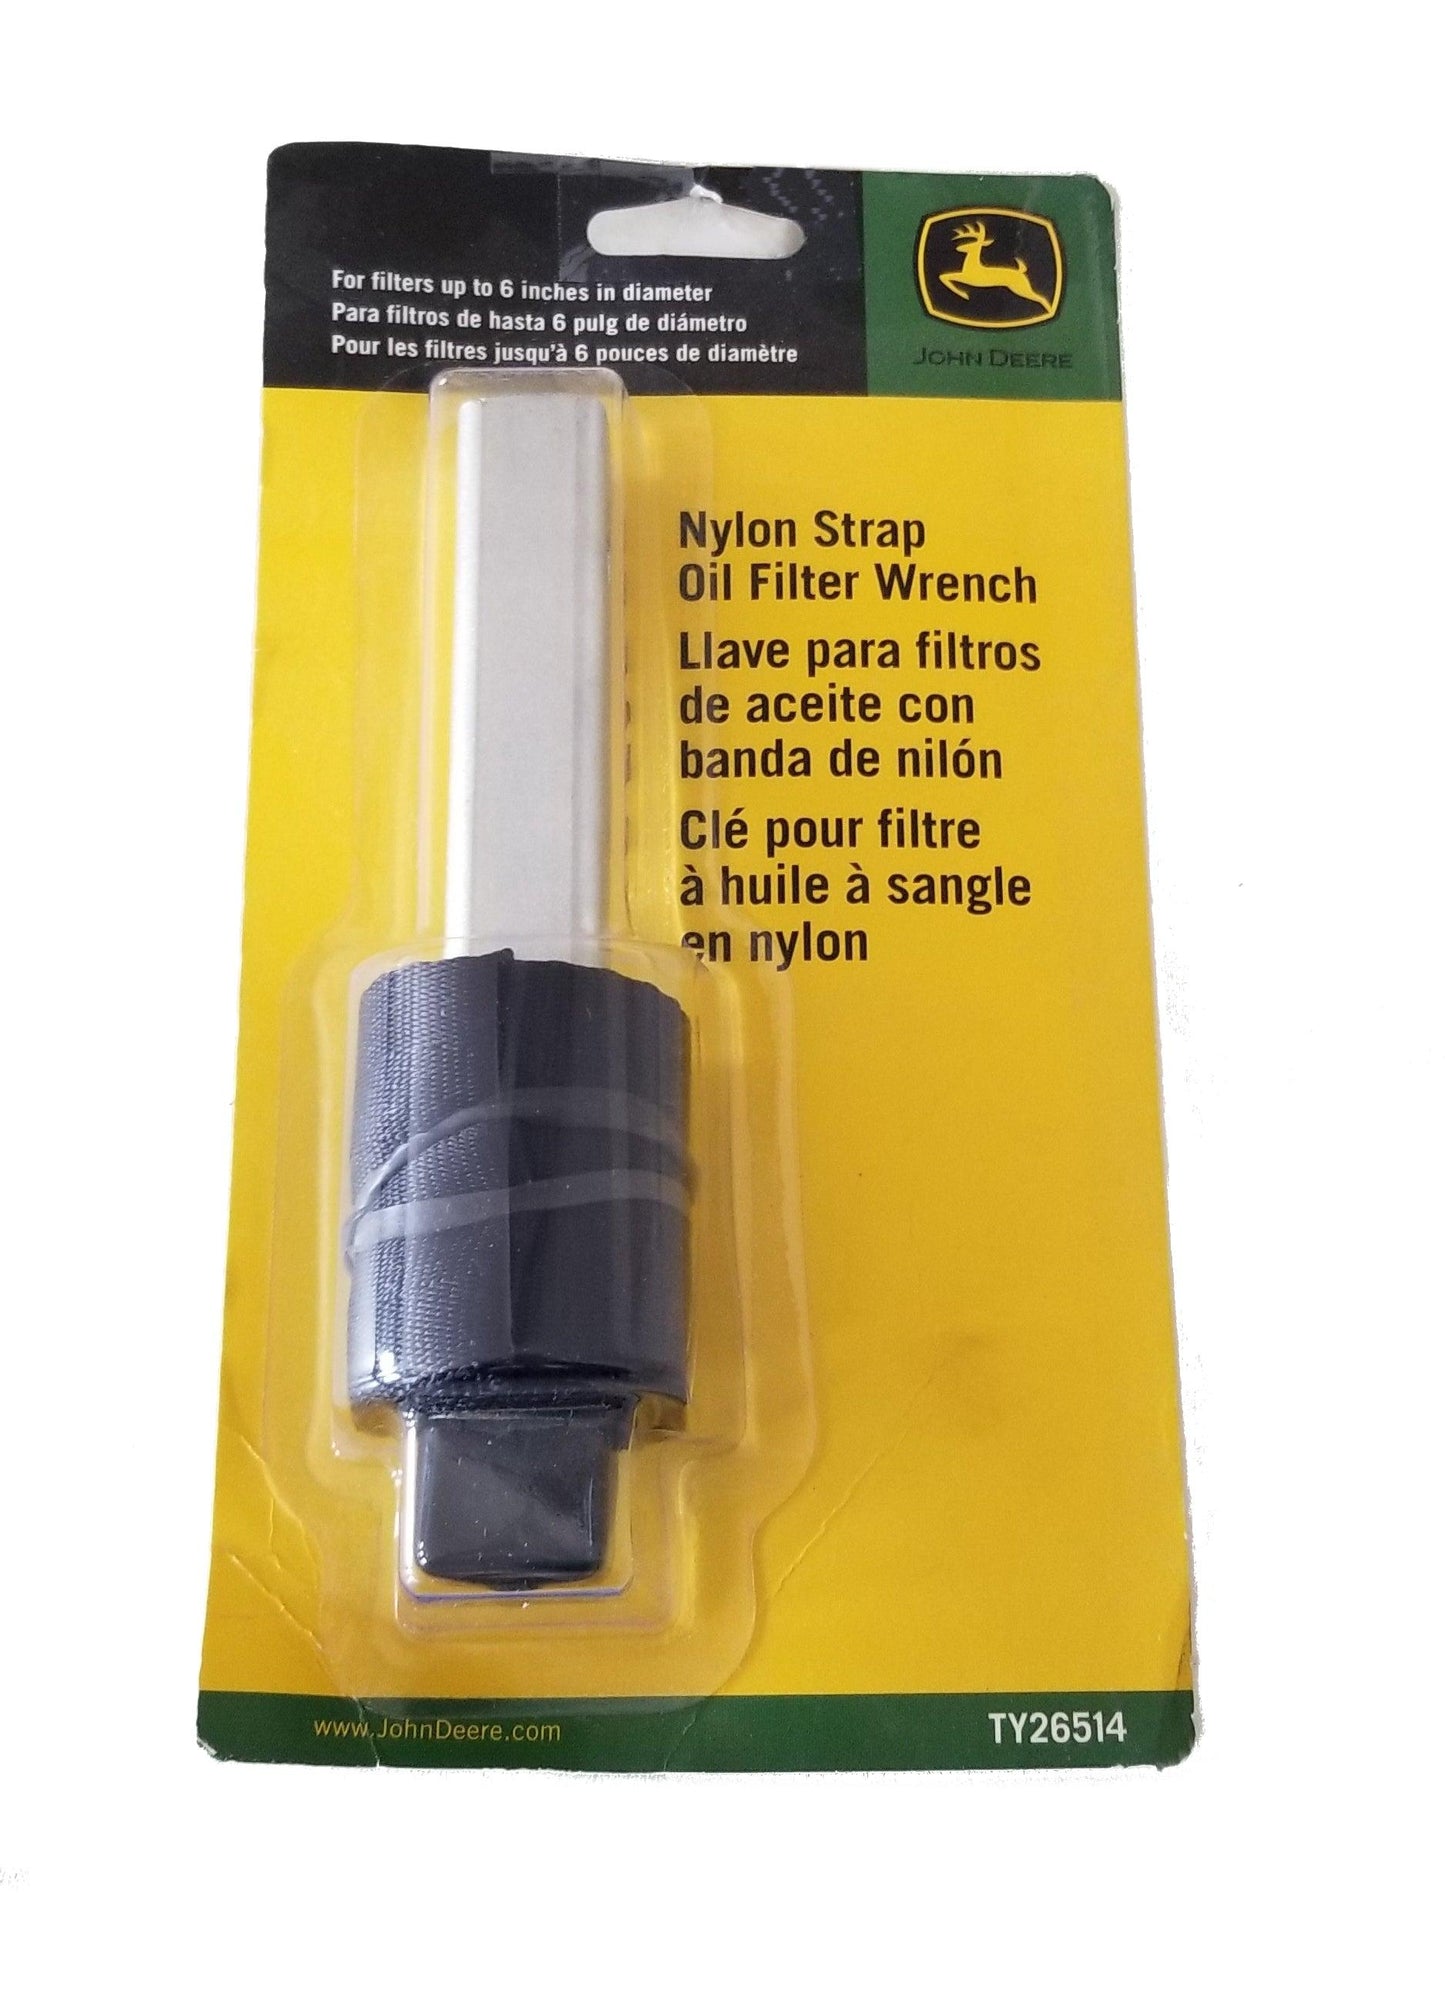 John Deere Nylon Strap Filter Wrench - TY26514